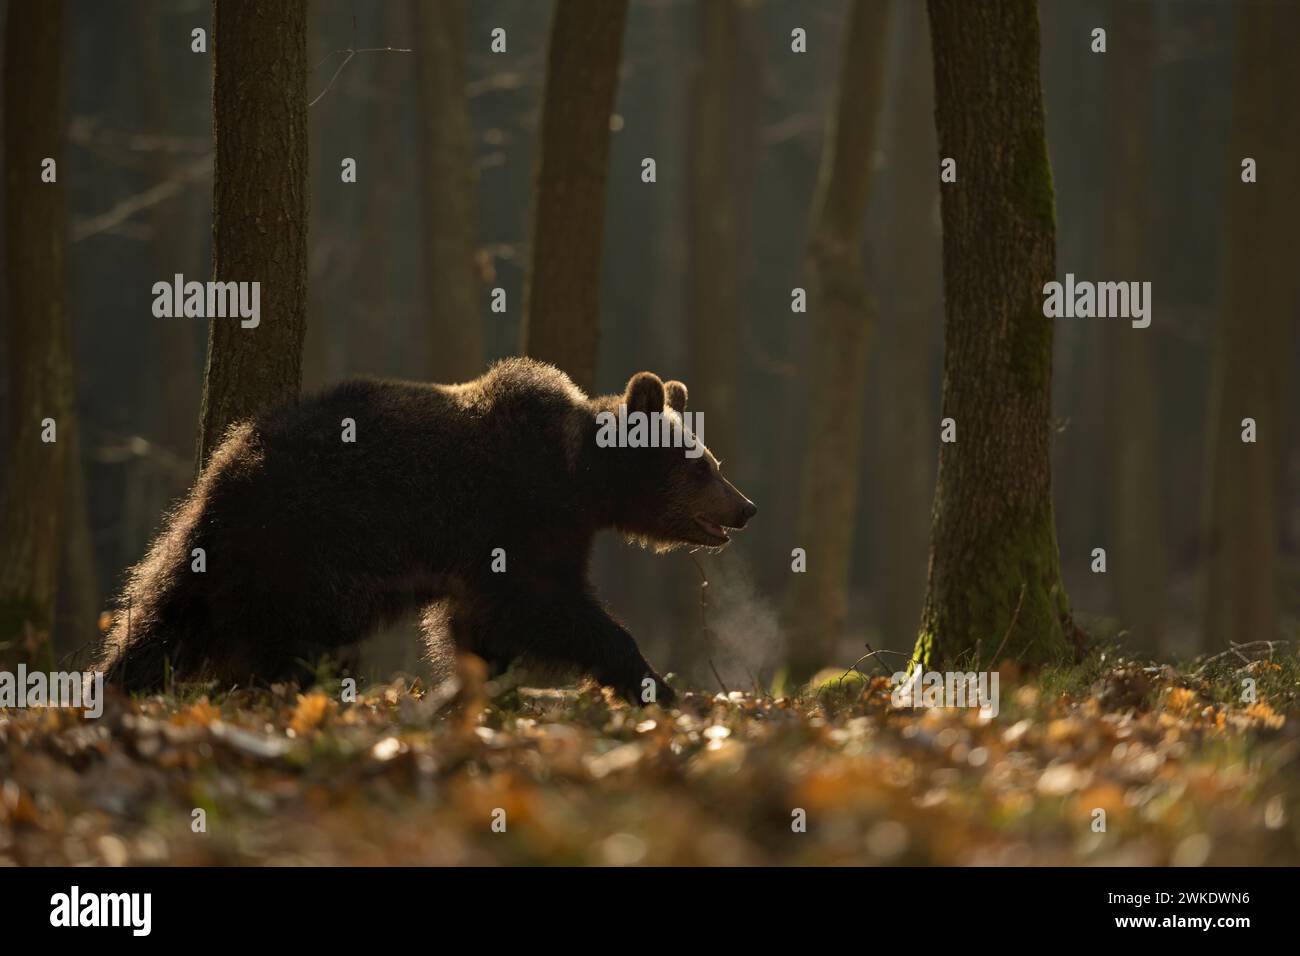 Orso bruno europeo ( Ursus arctos ) camminando attraverso una foresta, alla luce del primo mattino, situazione di retroilluminazione, nube di respiro visibile, Europa. Foto Stock